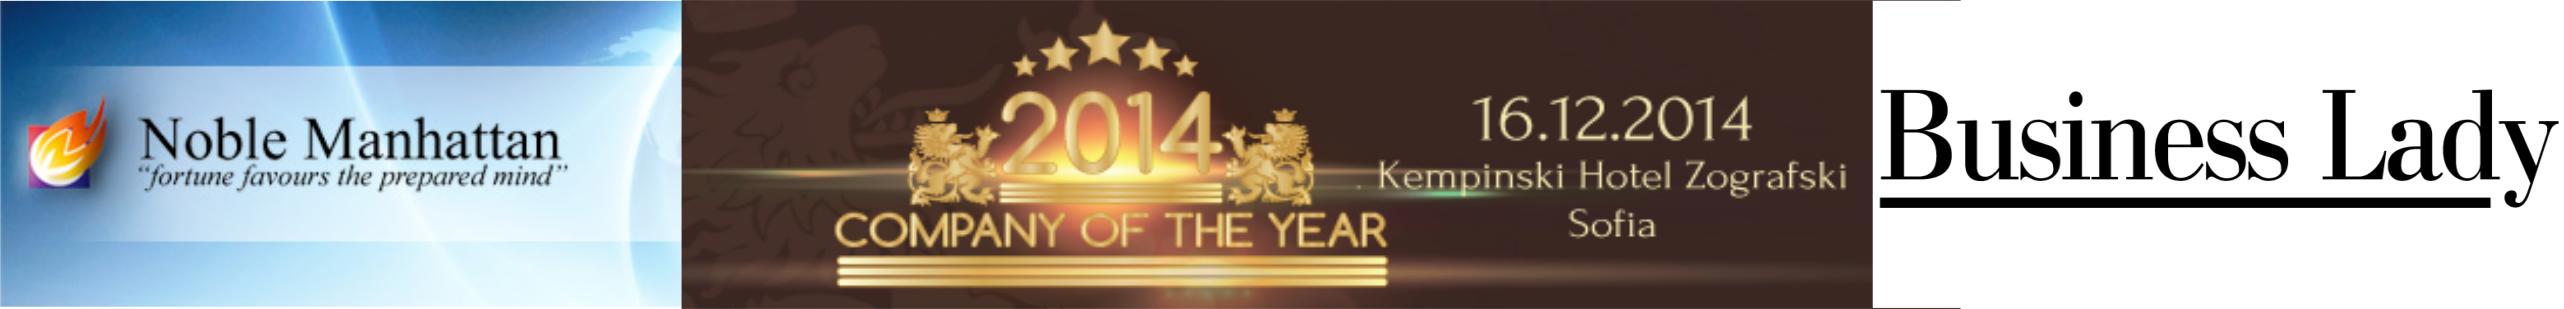 Company of the year award 9